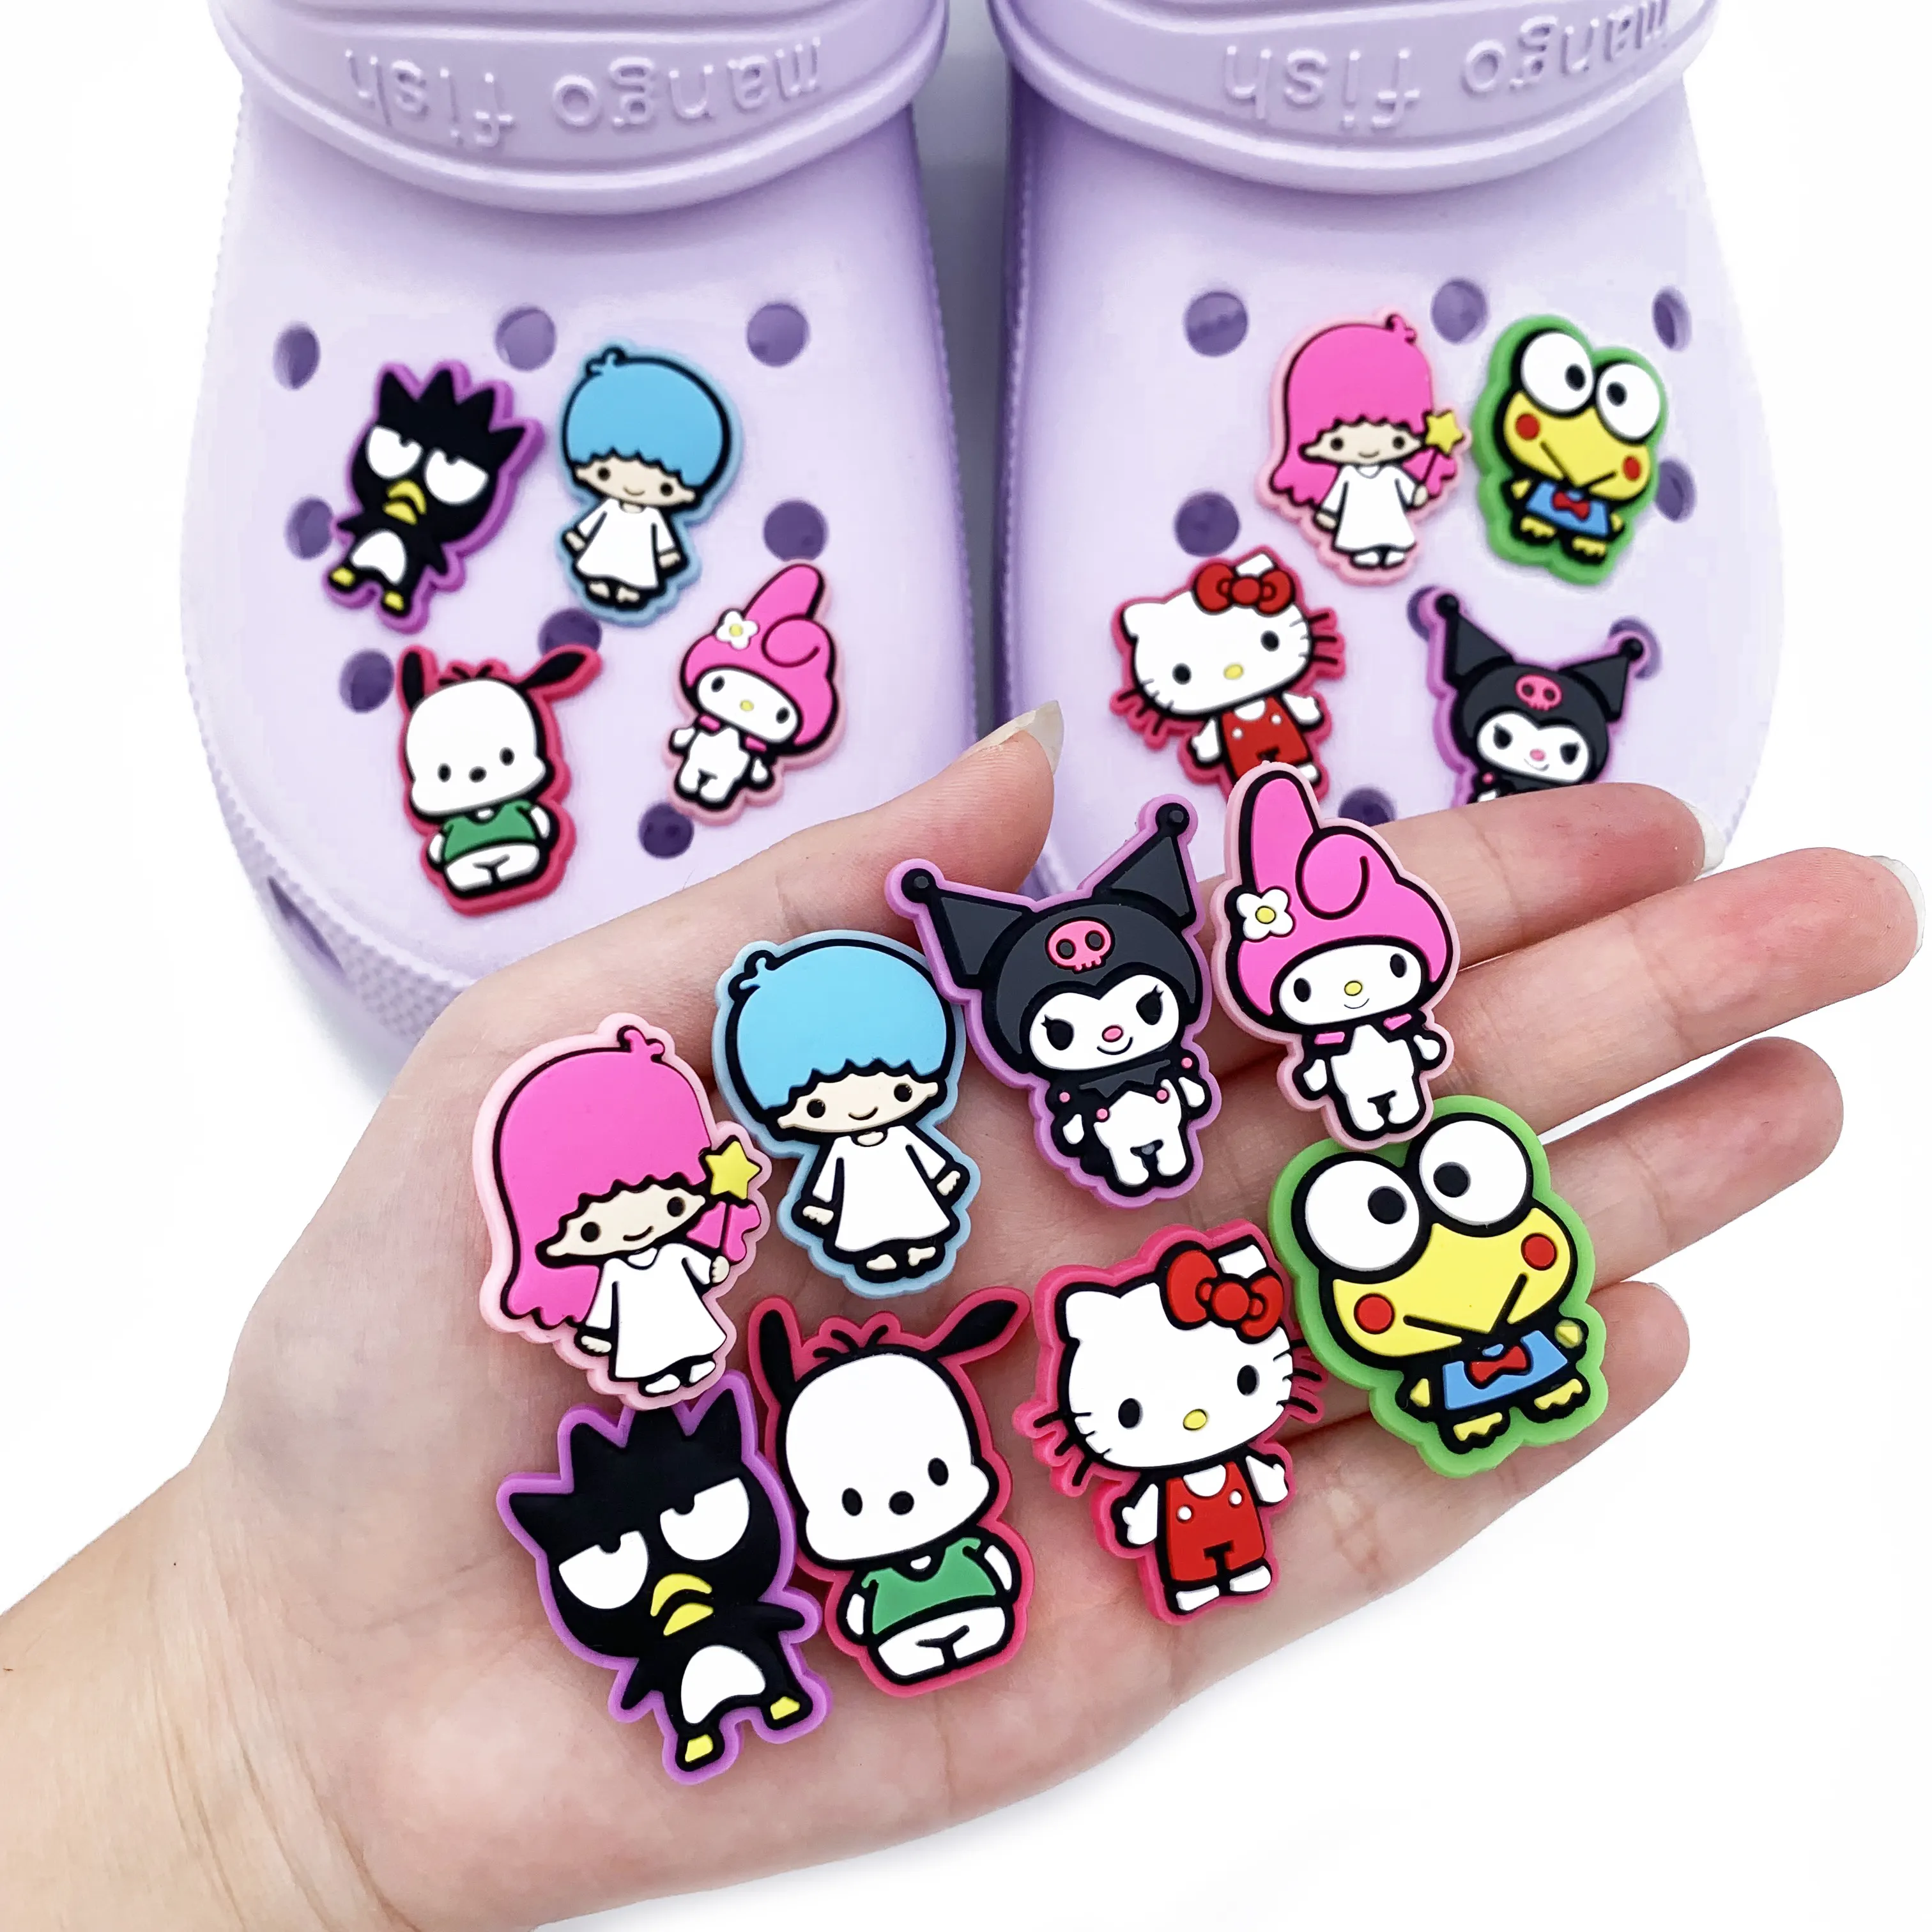 لعبة كرتونية من سانريو, سلسلة جديدة مبتكرة من أفلام الكرتون سانريو ، Hello Kitty My ميلودي للفتيات ، هدية ساحرة للأحذية